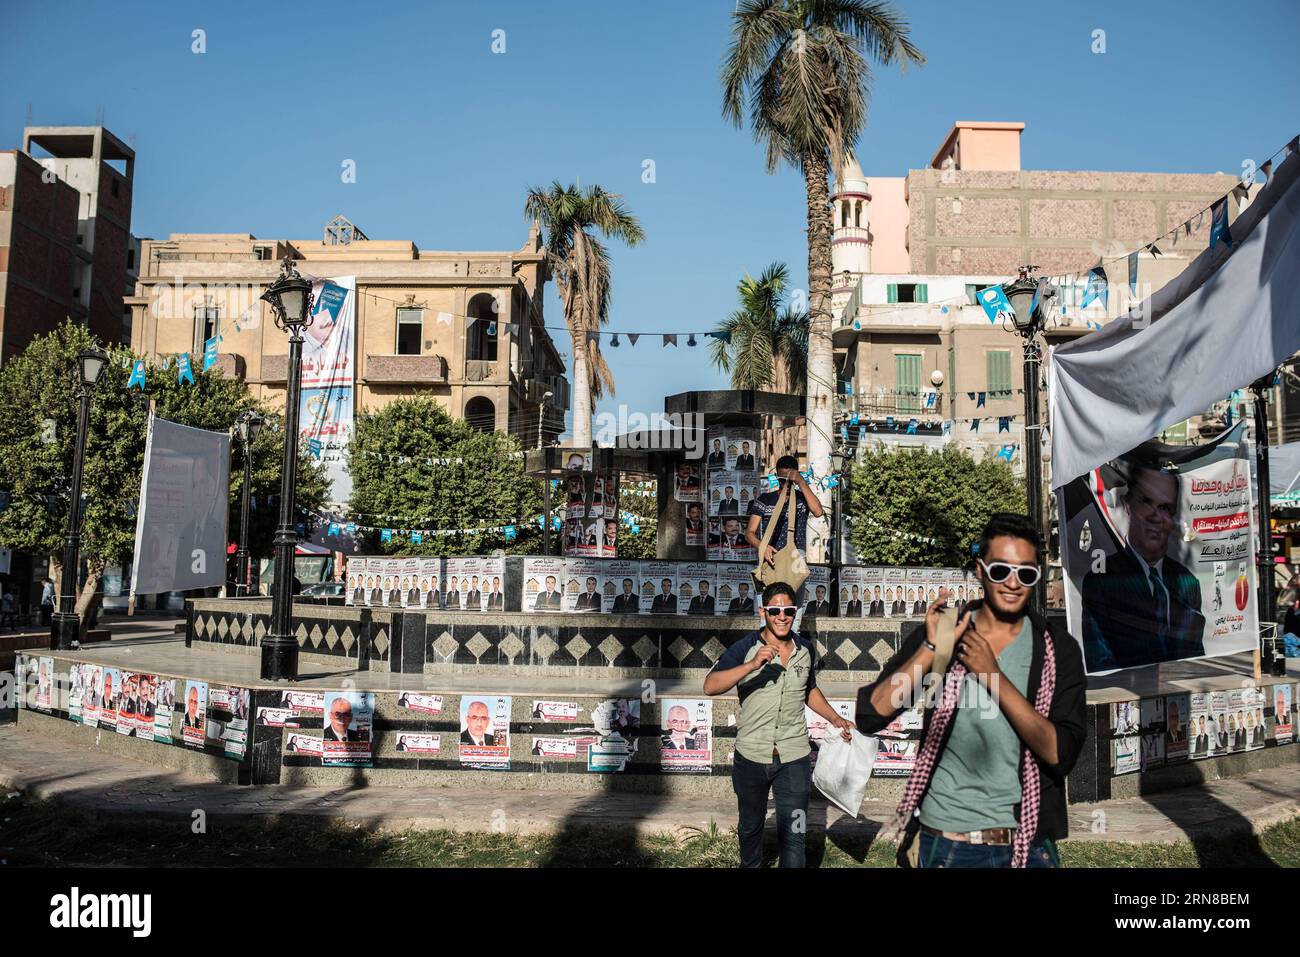 (151015) -- MINYA, 15. Oktober 2015 -- Ägypter gehen am Palastplatz vorbei, voller Plakate von Kandidaten für die anstehenden Parlamentswahlen im Stadtzentrum von El-Minya, Ägypten, am 15. Oktober 2015. Die lang erwarteten Parlamentswahlen in Ägypten werden in zwei Phasen durchgeführt, die sich auf die 27 Provinzen des Landes erstrecken. Die erste Phase, die 14 Provinzen umfasst, findet am 18. Und 19. Oktober statt, die zweite Phase, die die übrigen 13 Provinzen am 22. Und 23. November umfasst. ) ÄGYPTEN-MINYA-PARLAMENT-WAHL PanxChaoyue PUBLICATIONxNOTxINxCHN Minya OCT 15 2015 Ägypter gehen am Palastplatz vorbei voller Plakate von Candida Stockfoto